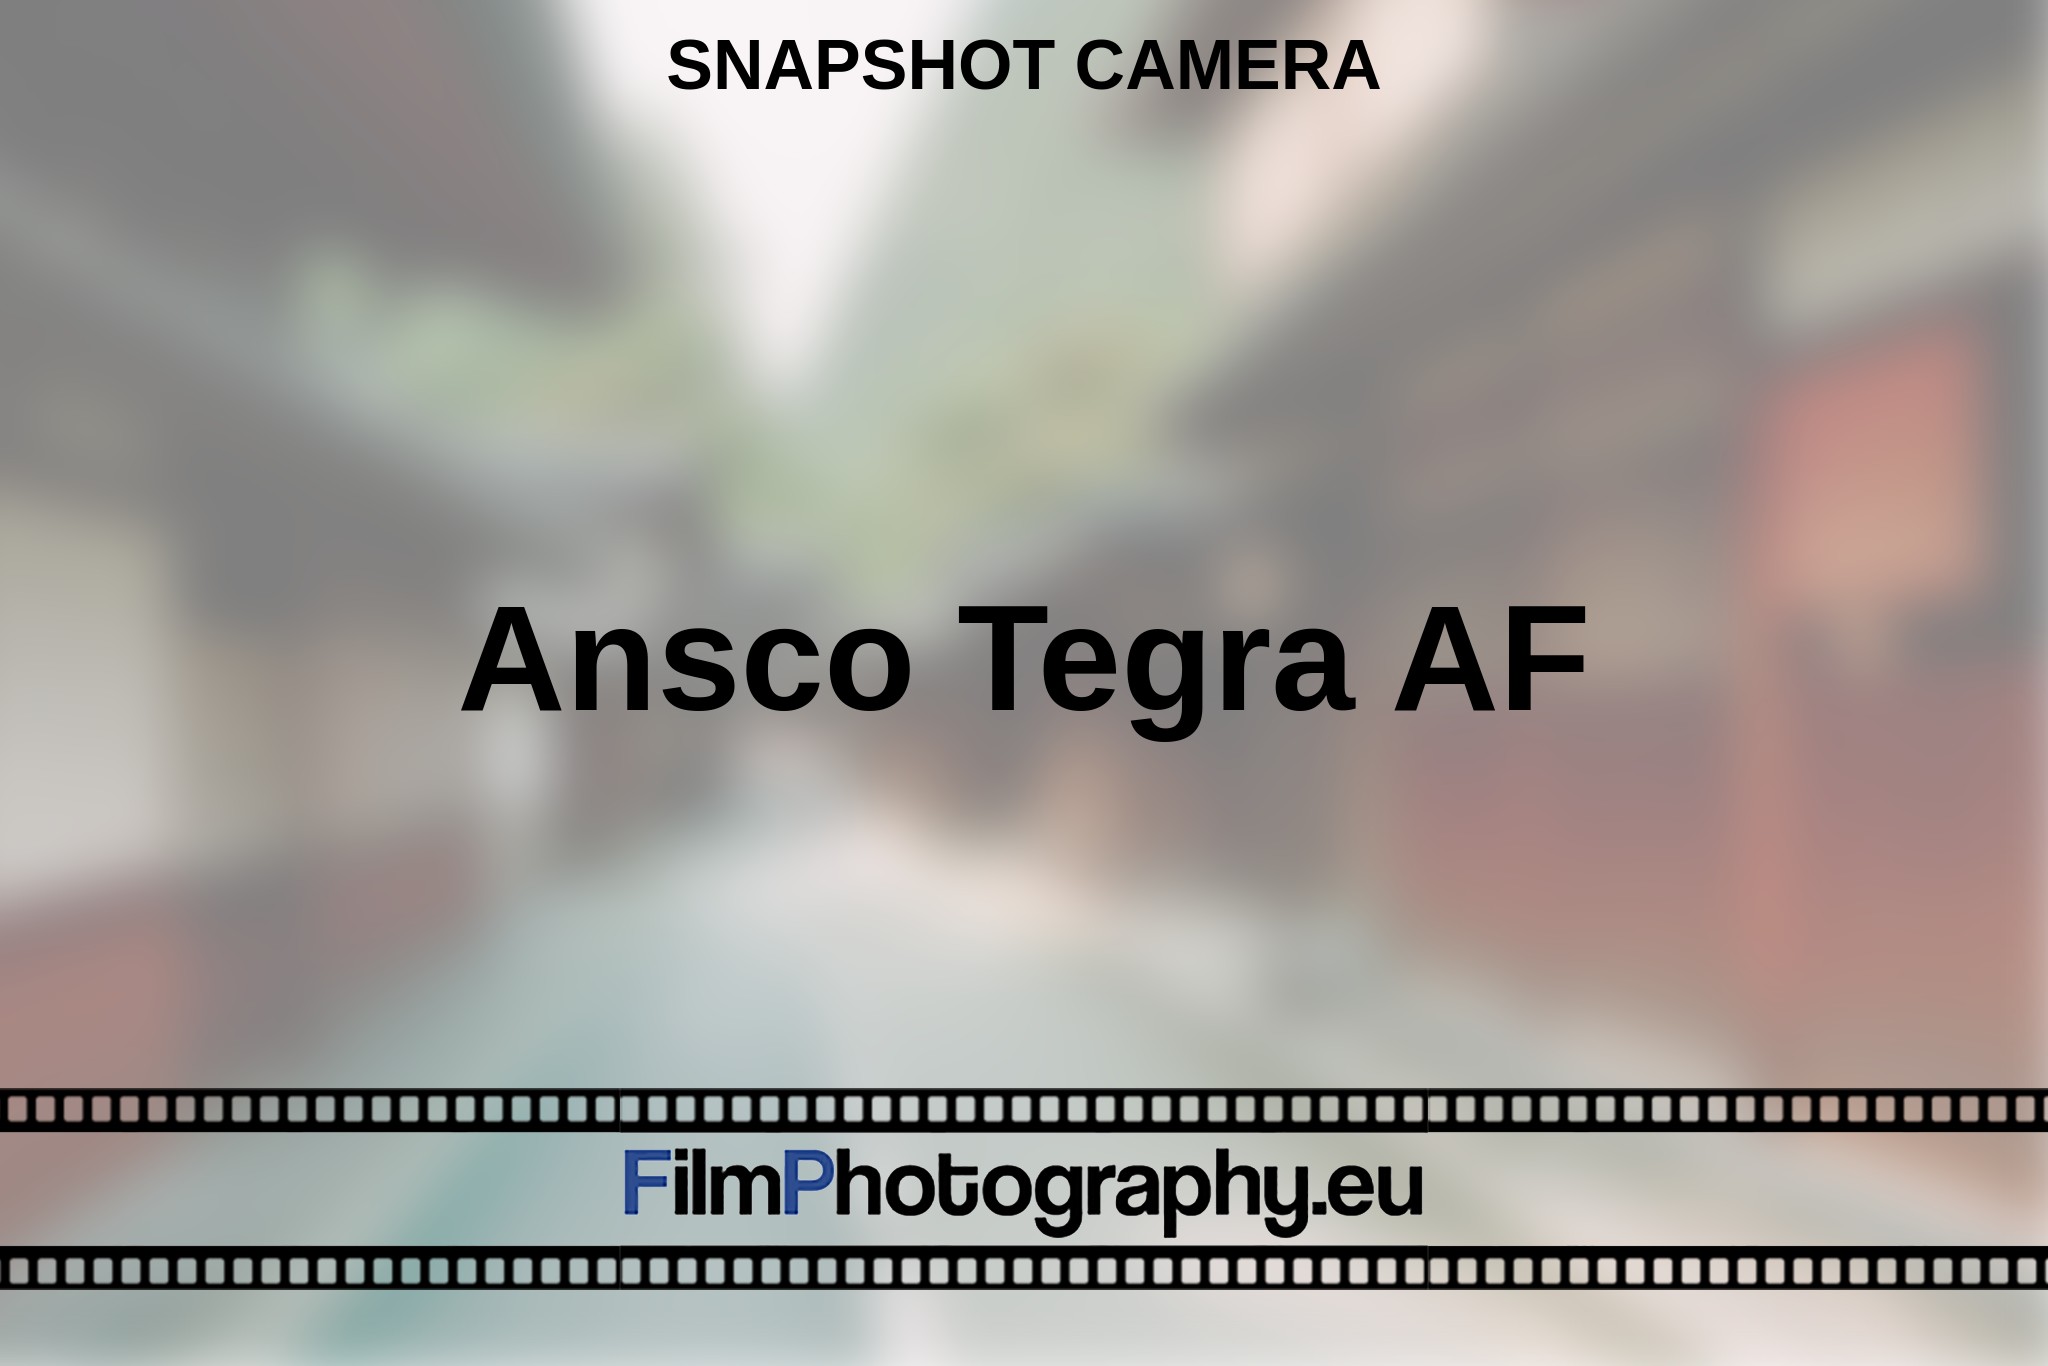 ansco-tegra-af-snapshot-camera-en-bnv.jpg